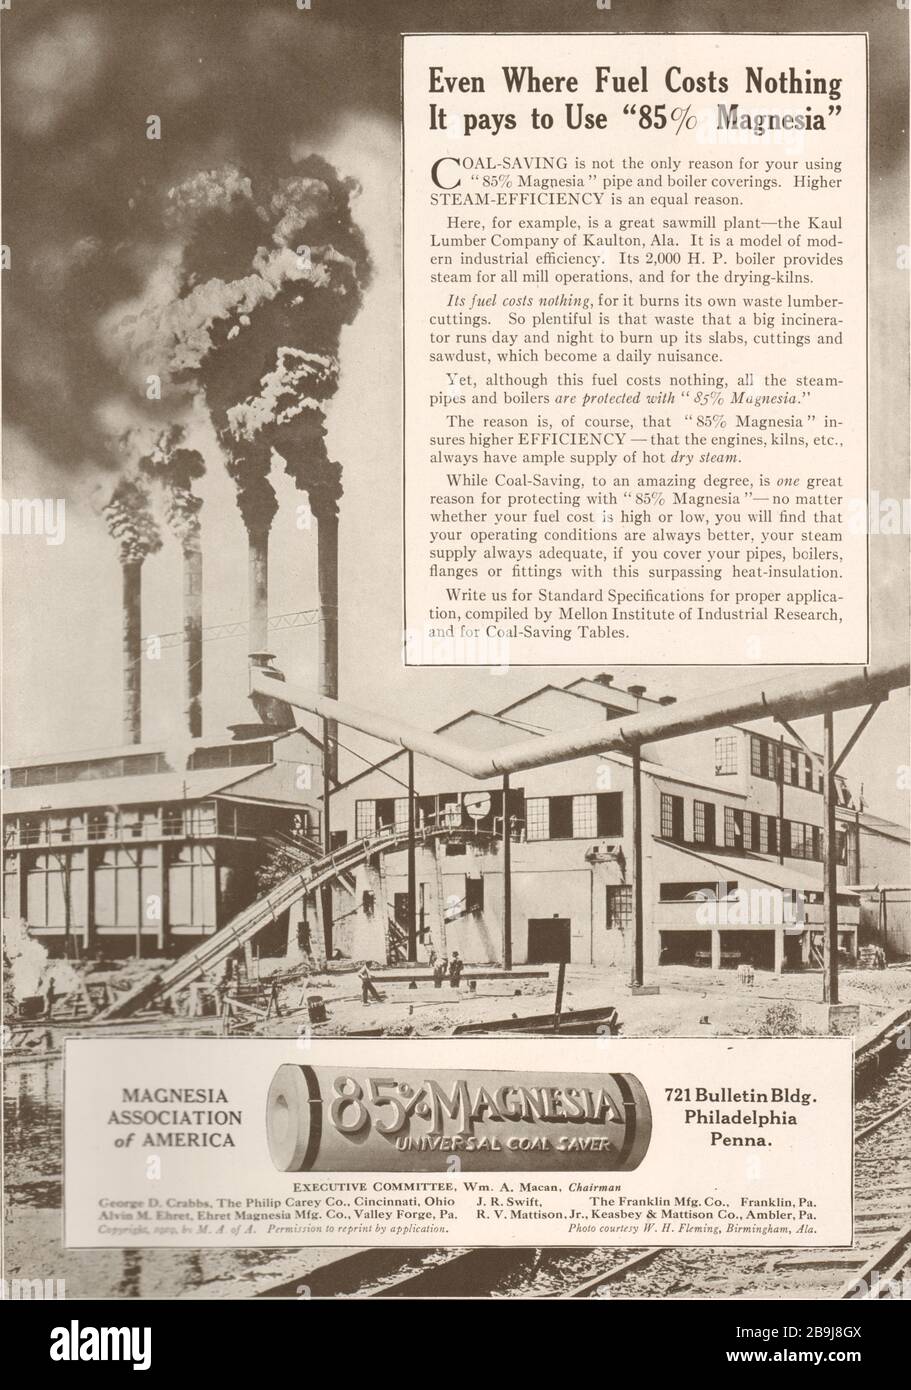 Même là où le carburant ne coûte rien, il paie d'utiliser 85% Magnesia économie universelle de charbon. Association de magnésie de l'Amérique, 721 Bulletin Building (1919) Banque D'Images